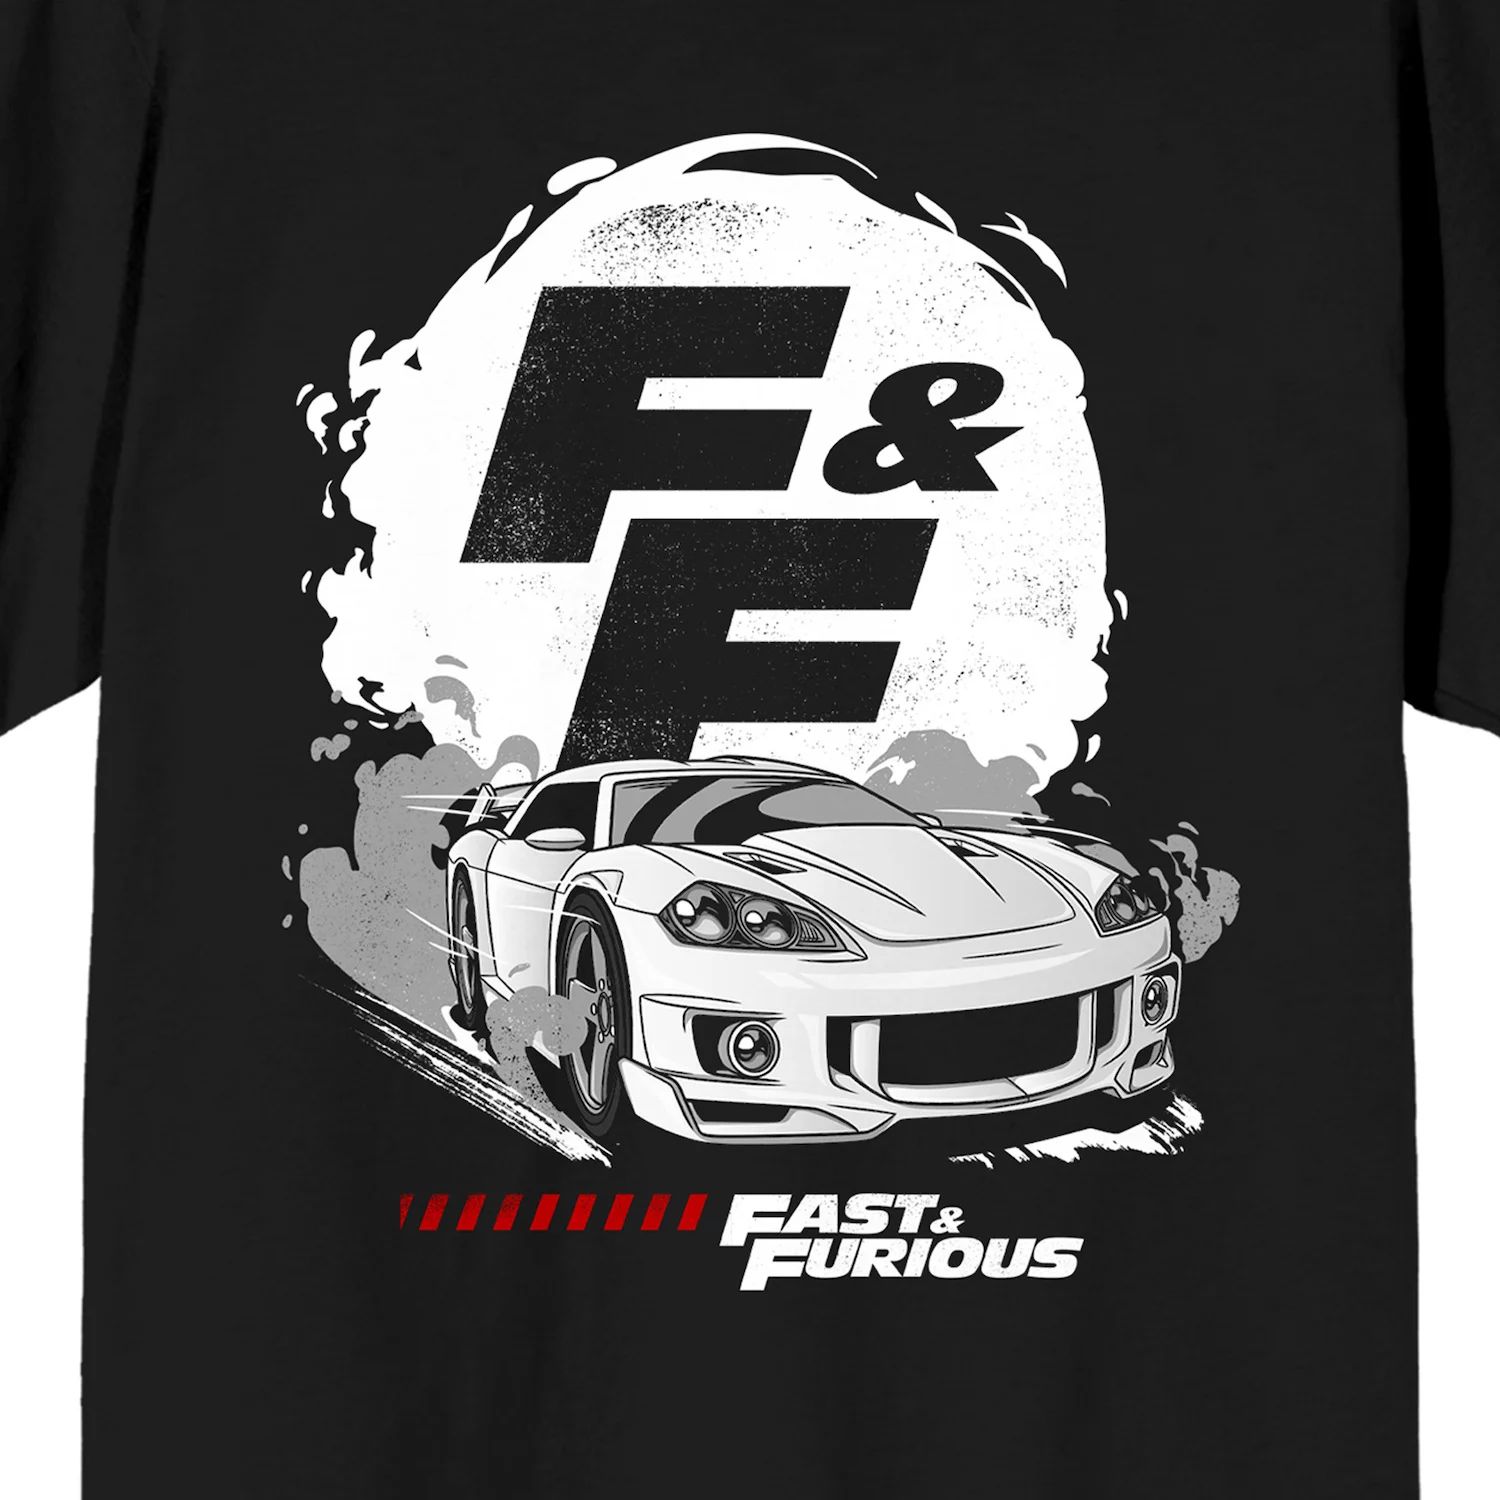 Мужская футболка с логотипом The Fast & The Furious Licensed Character цена и фото